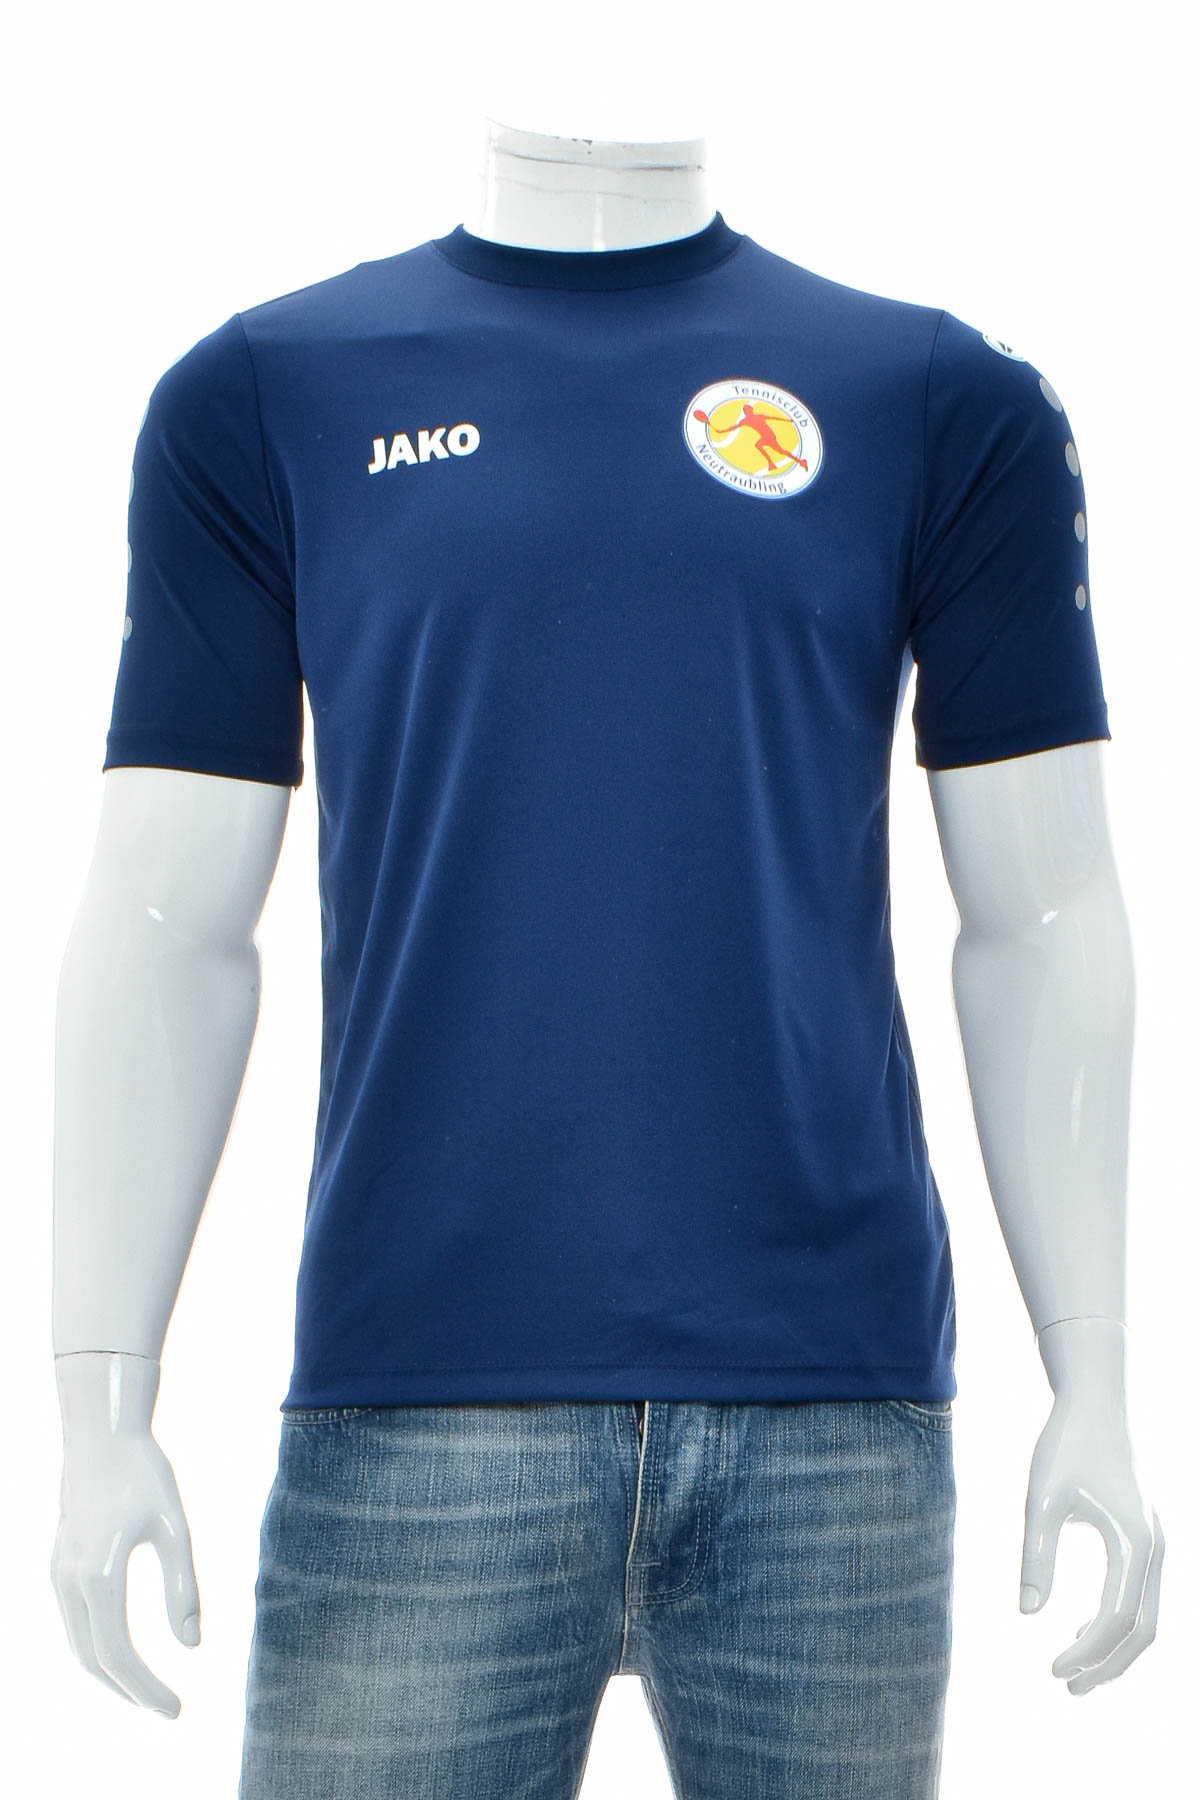 Αντρική μπλούζα - Jako - 0